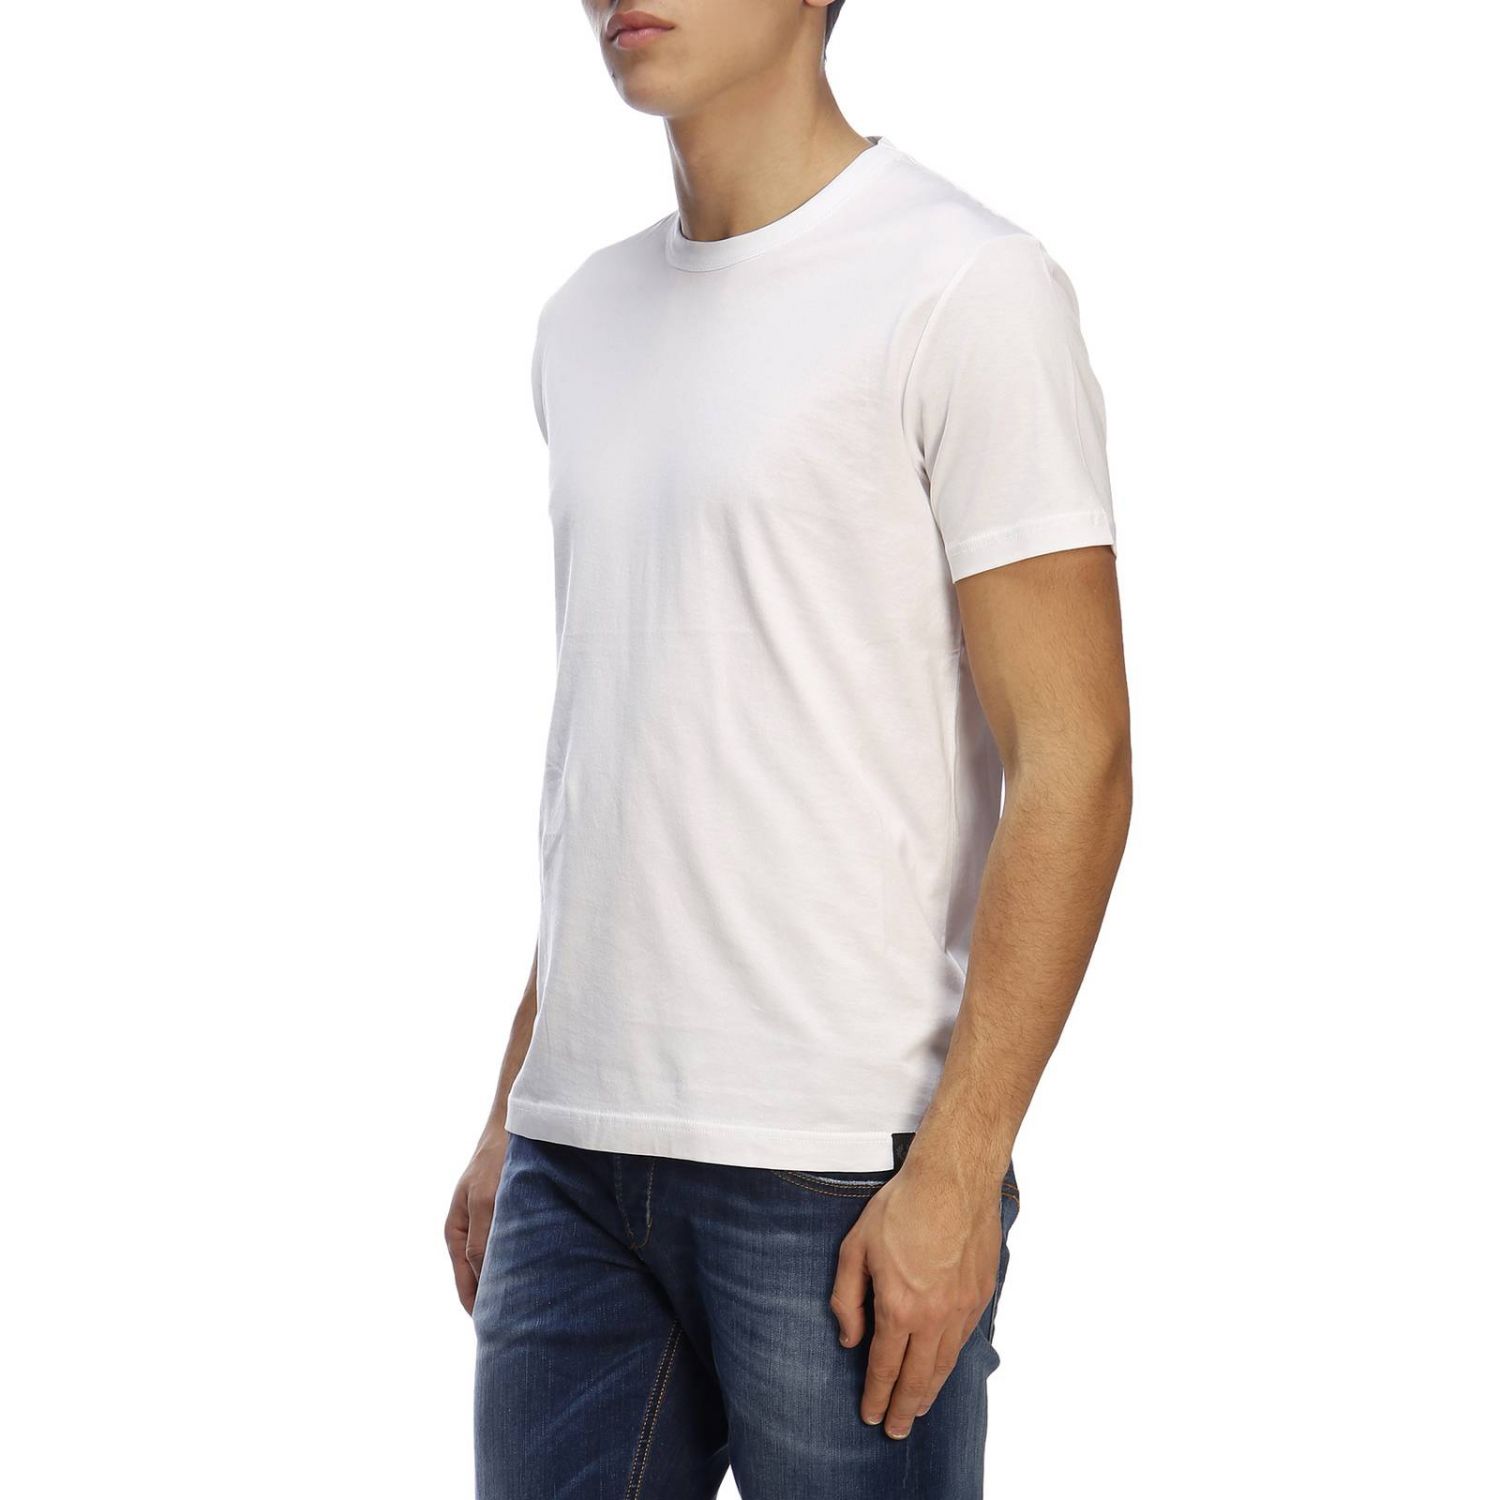 Belstaff Outlet: T-shirt men | T-Shirt Belstaff Men White | T-Shirt ...